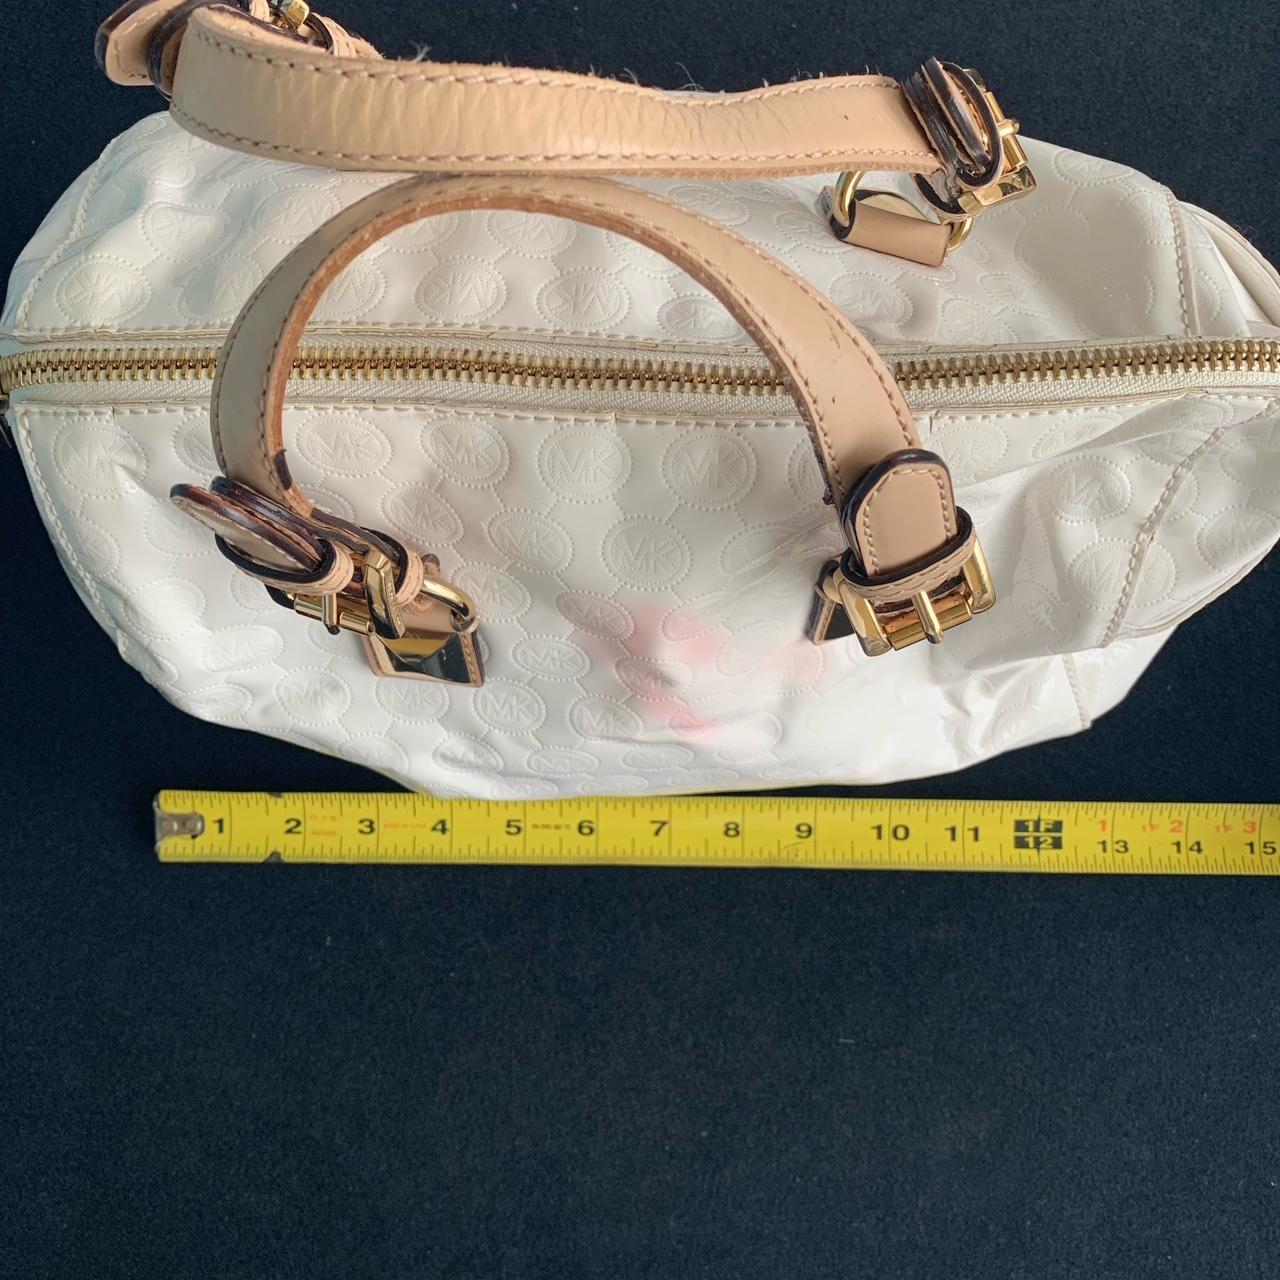 Michaels Kors white 2013 Speedy handbag, pre-own - Depop